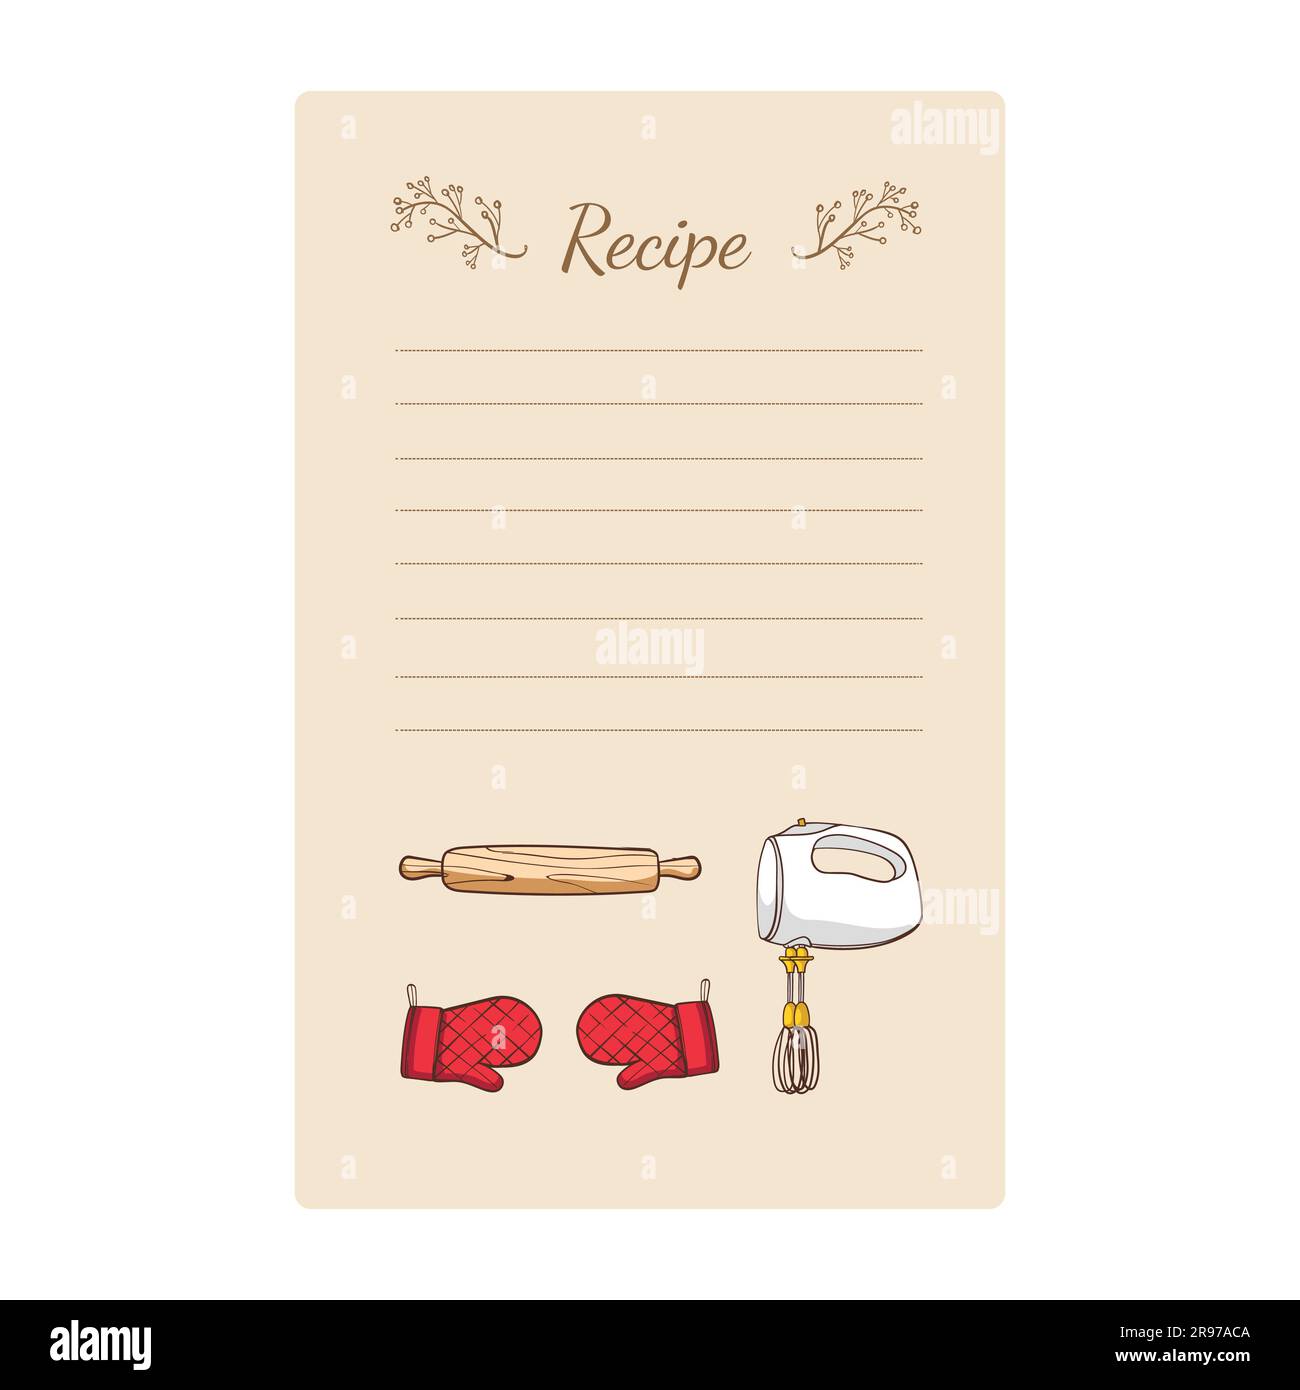 Modèle de carte de recette avec ustensiles de cuisine dessinés à la main. Illustration vectorielle. Illustration de Vecteur